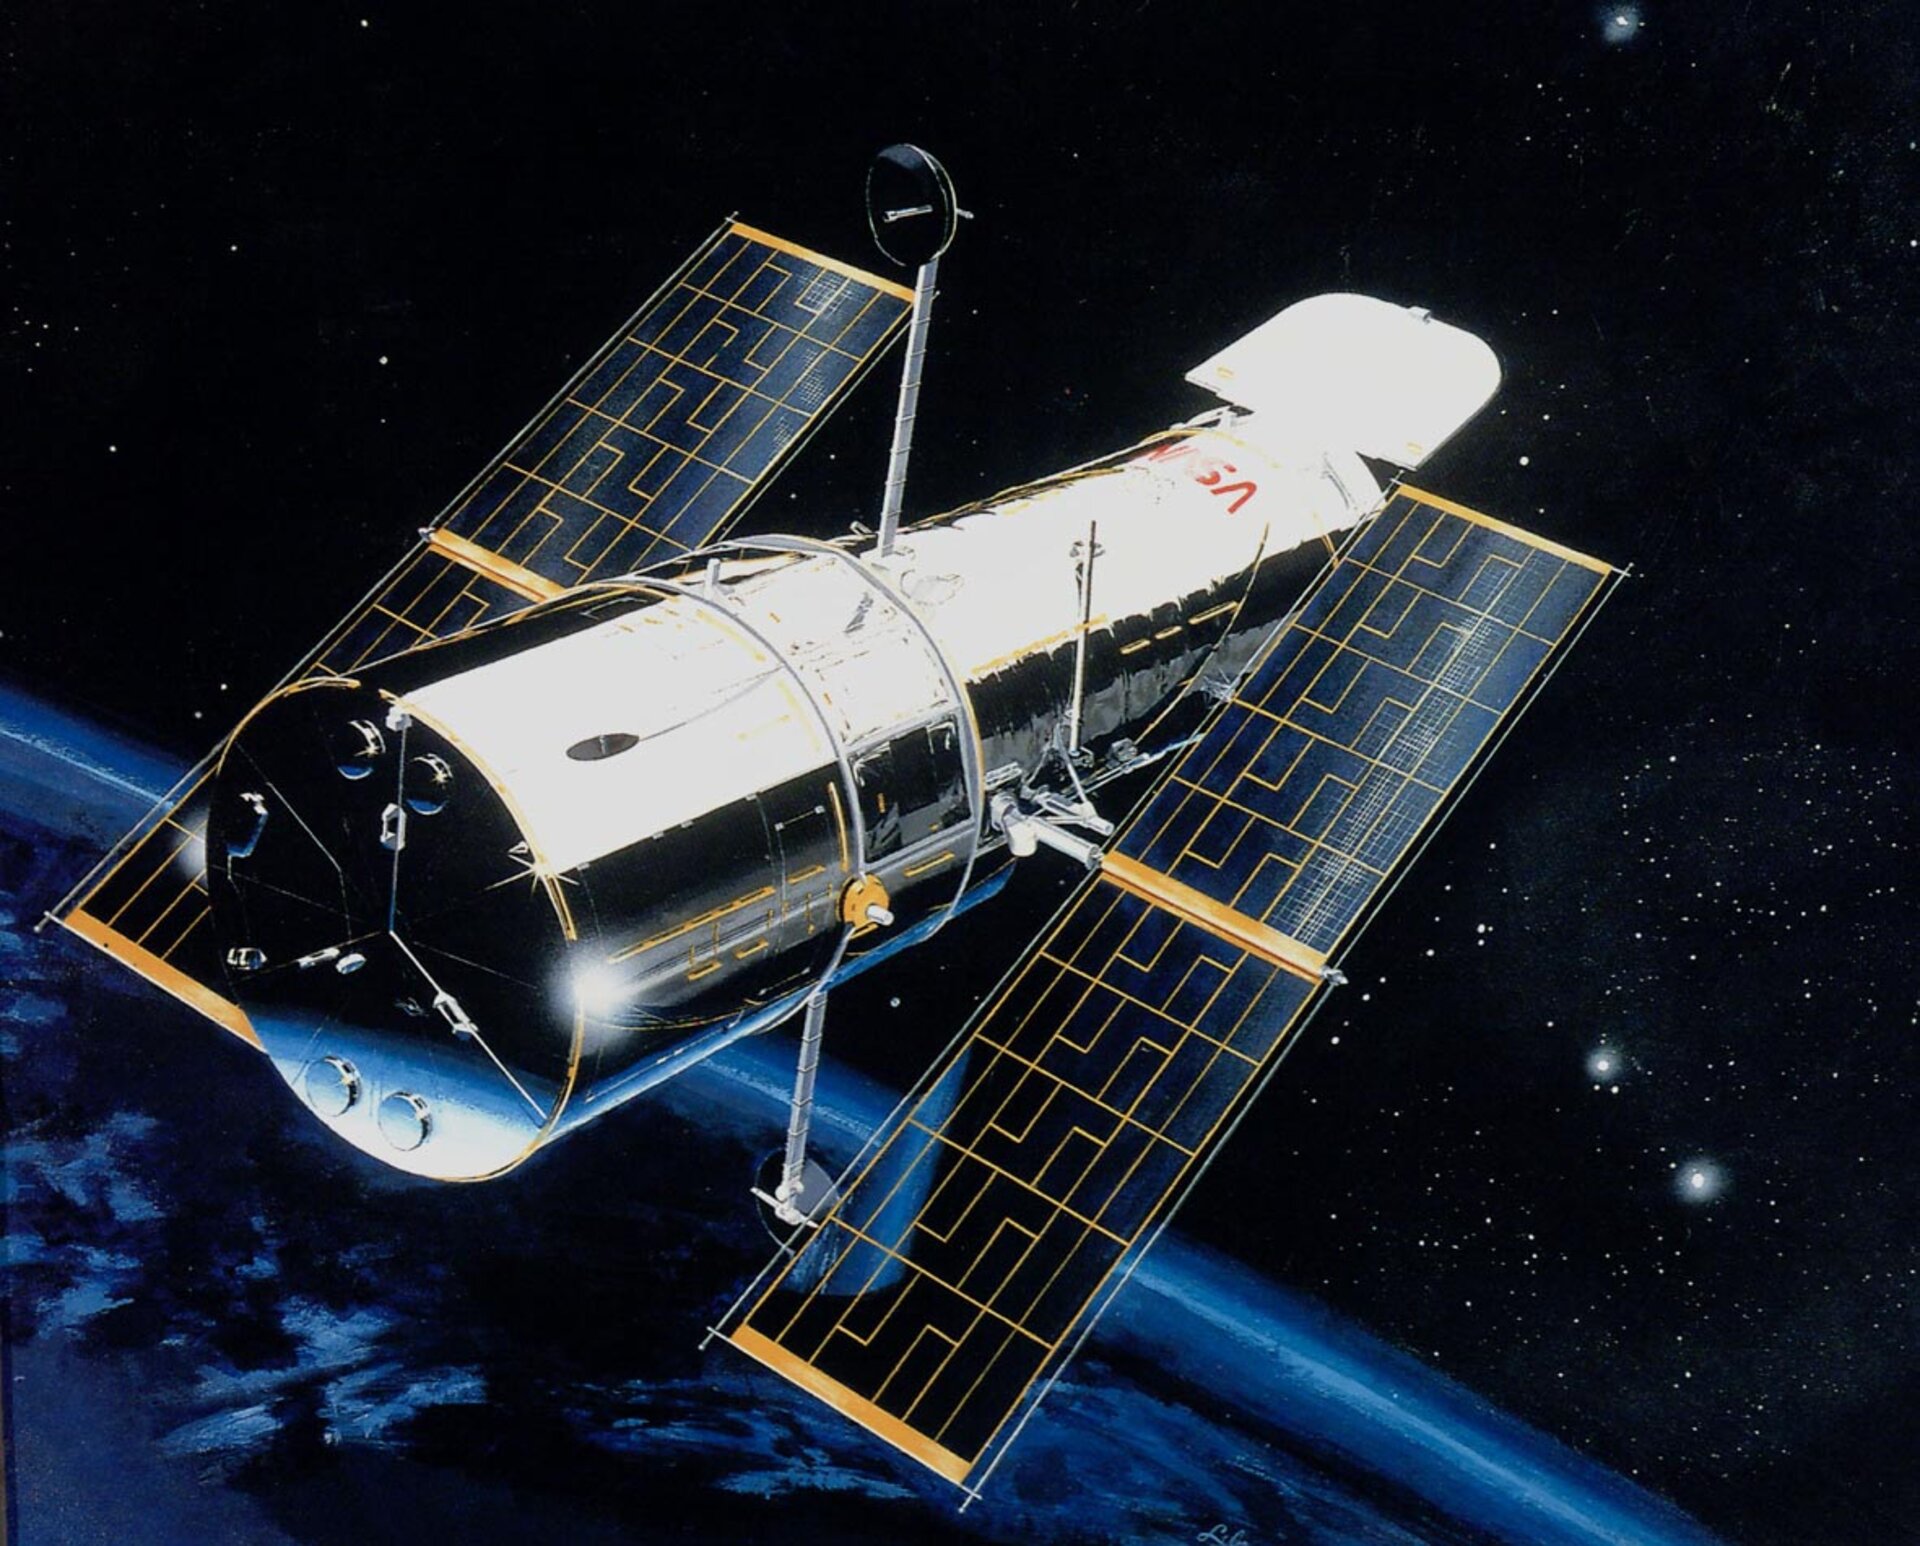 Hubble-teleskopet ska snart pensioneras. Forskare från Uppsala är med och tar fram ett nytt